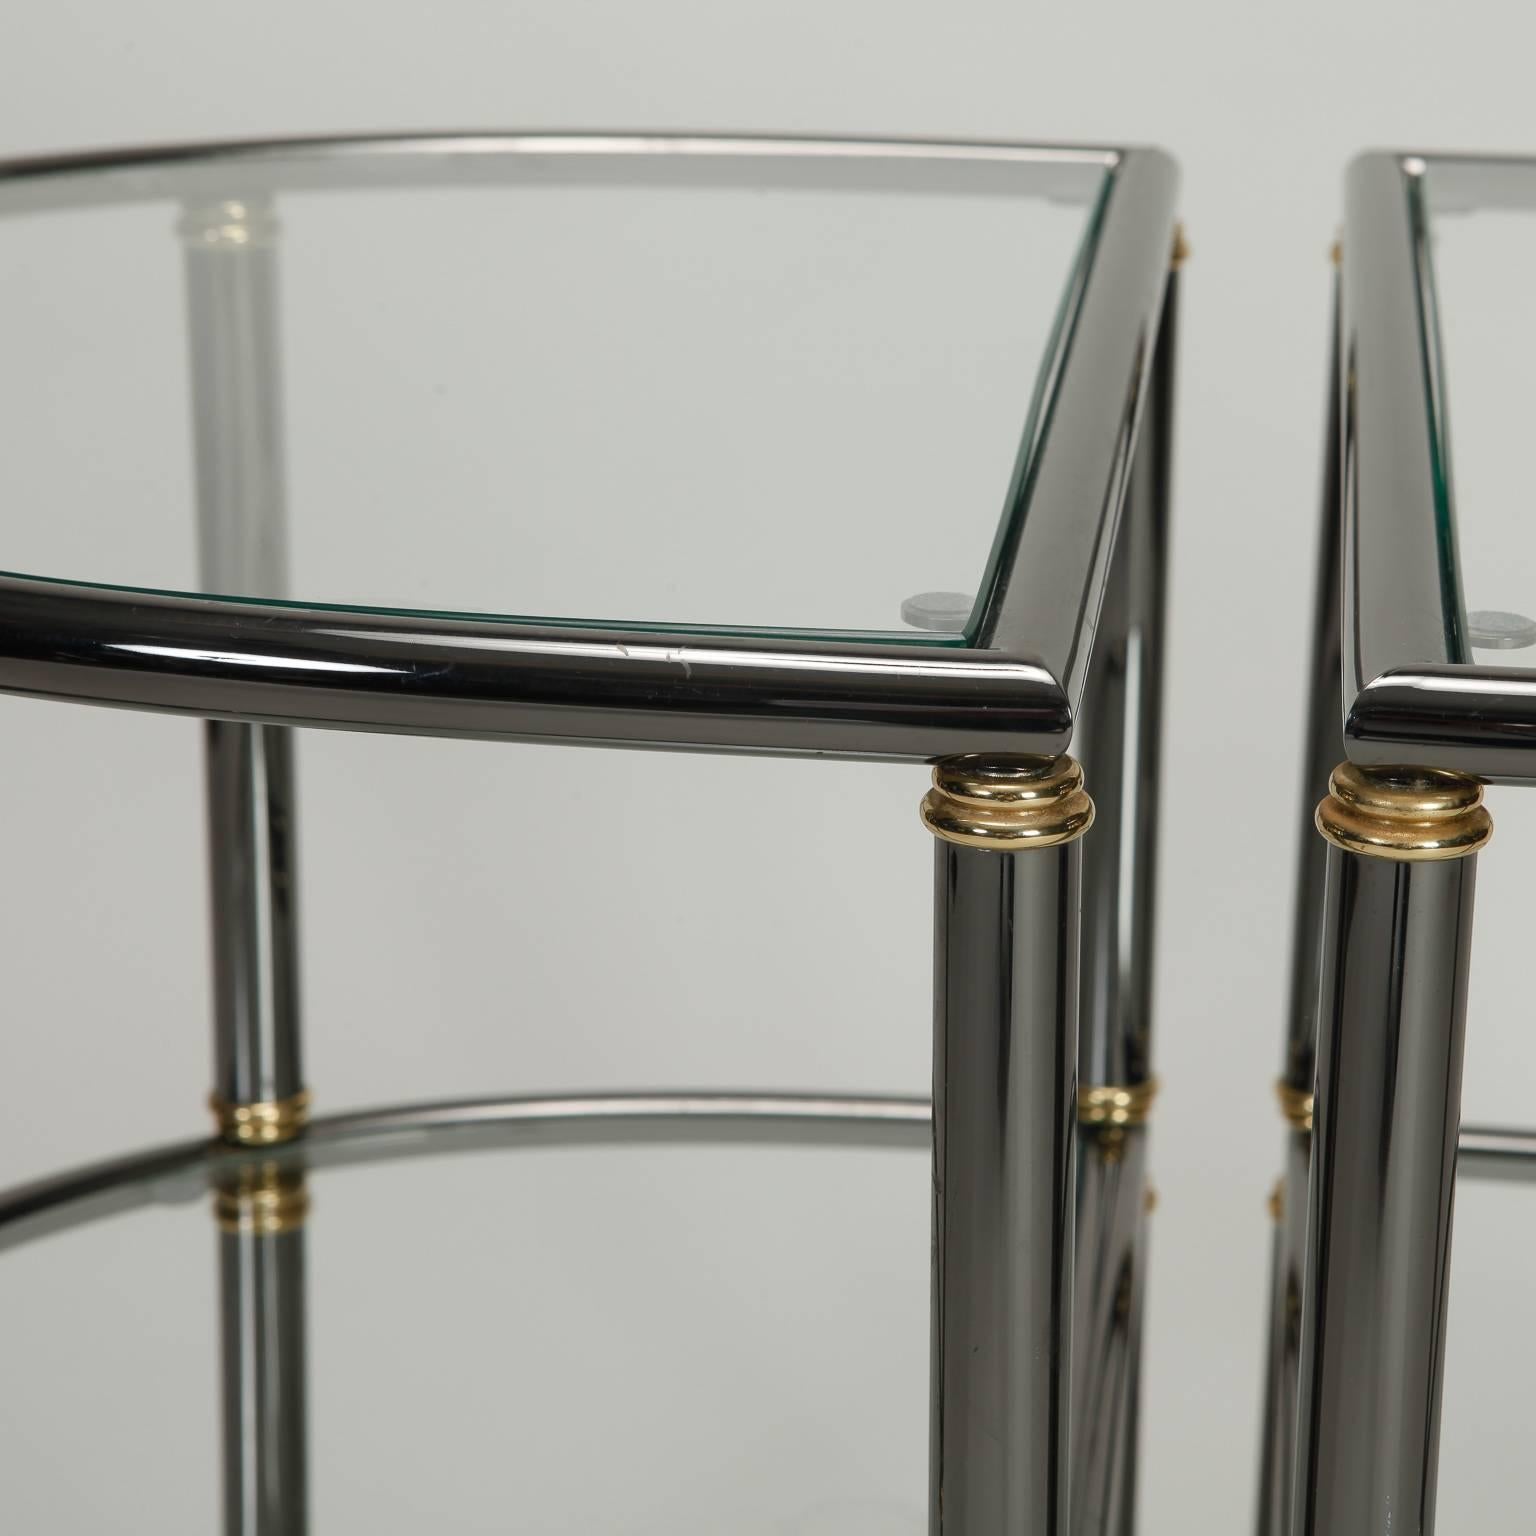 Paire de tables d'appoint demilune à deux niveaux avec des cadres tubulaires en métal gun, des accents en laiton et des étagères en verre, vers les années 1970. Vendu et tarifé comme une paire.
 